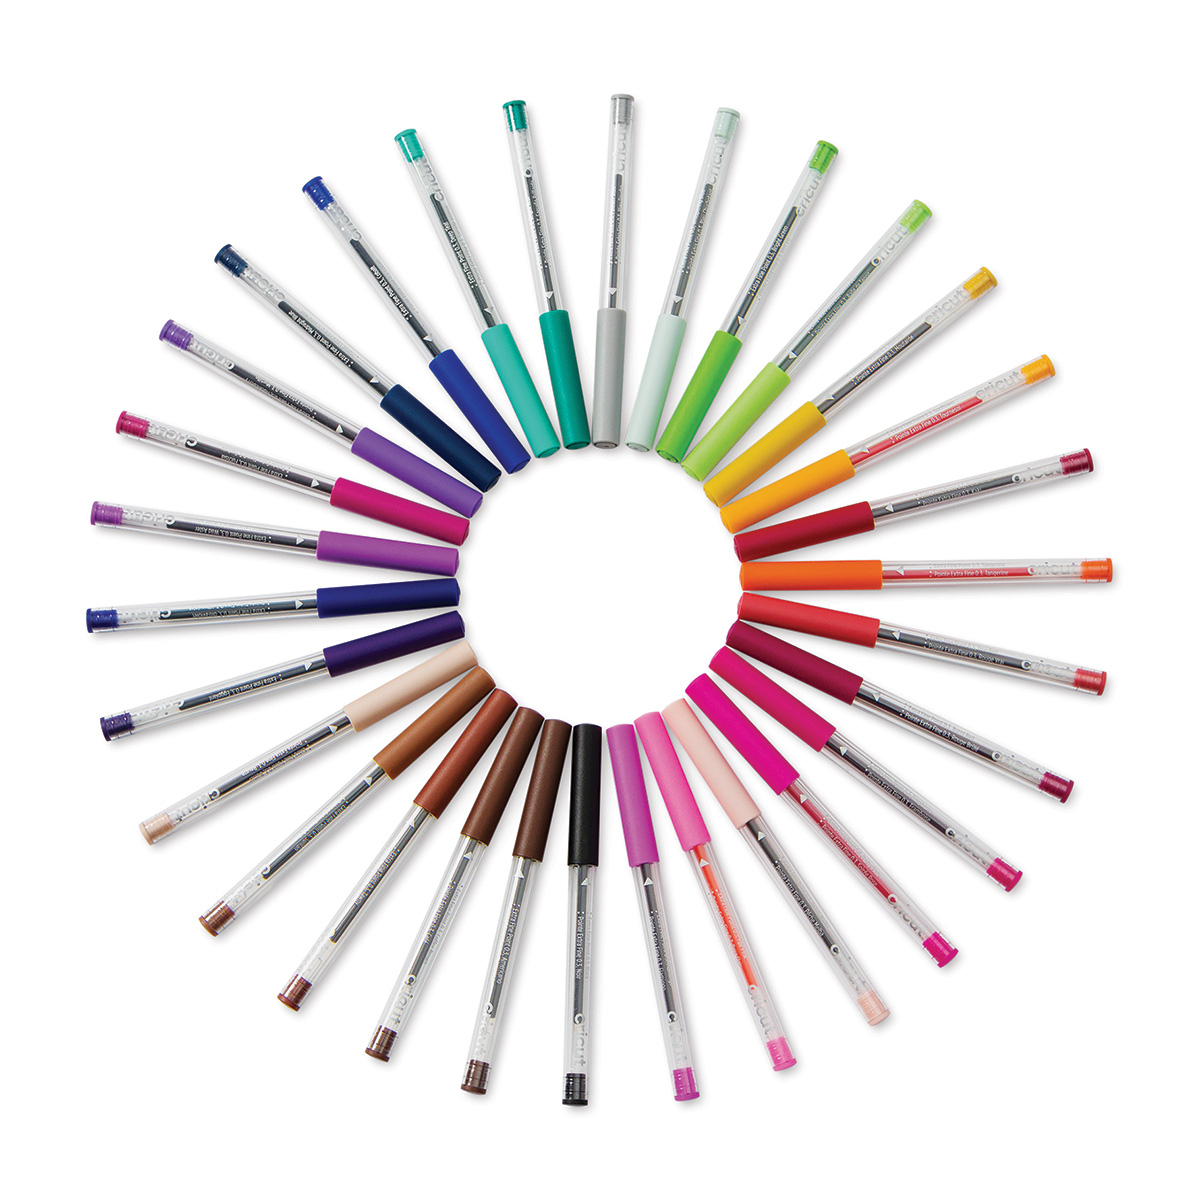 2004505)Cricut Extra Fine Point Pen Set Basics